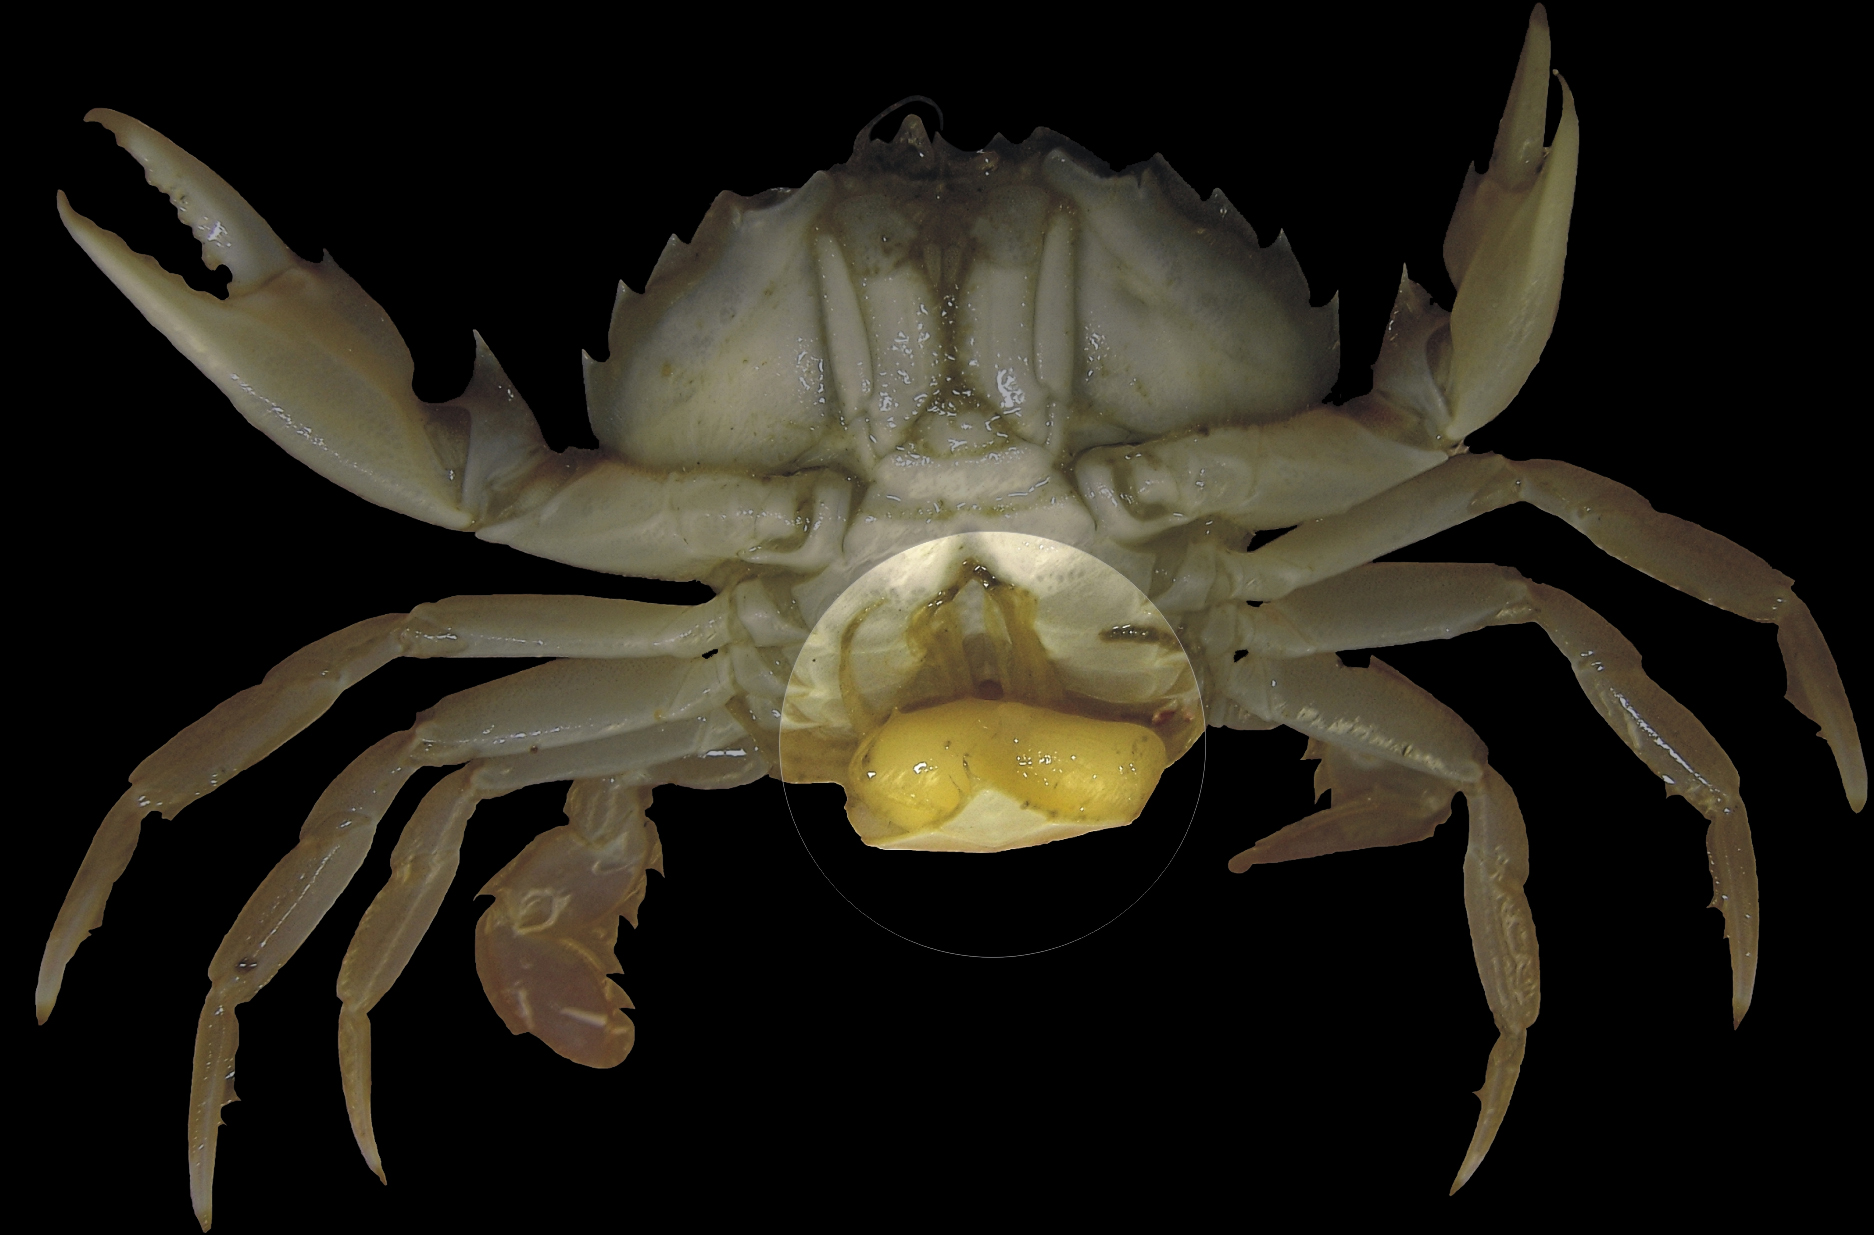 La sacculine s'accroche au crabe pour tirer des nutriments circulant dans son sang.